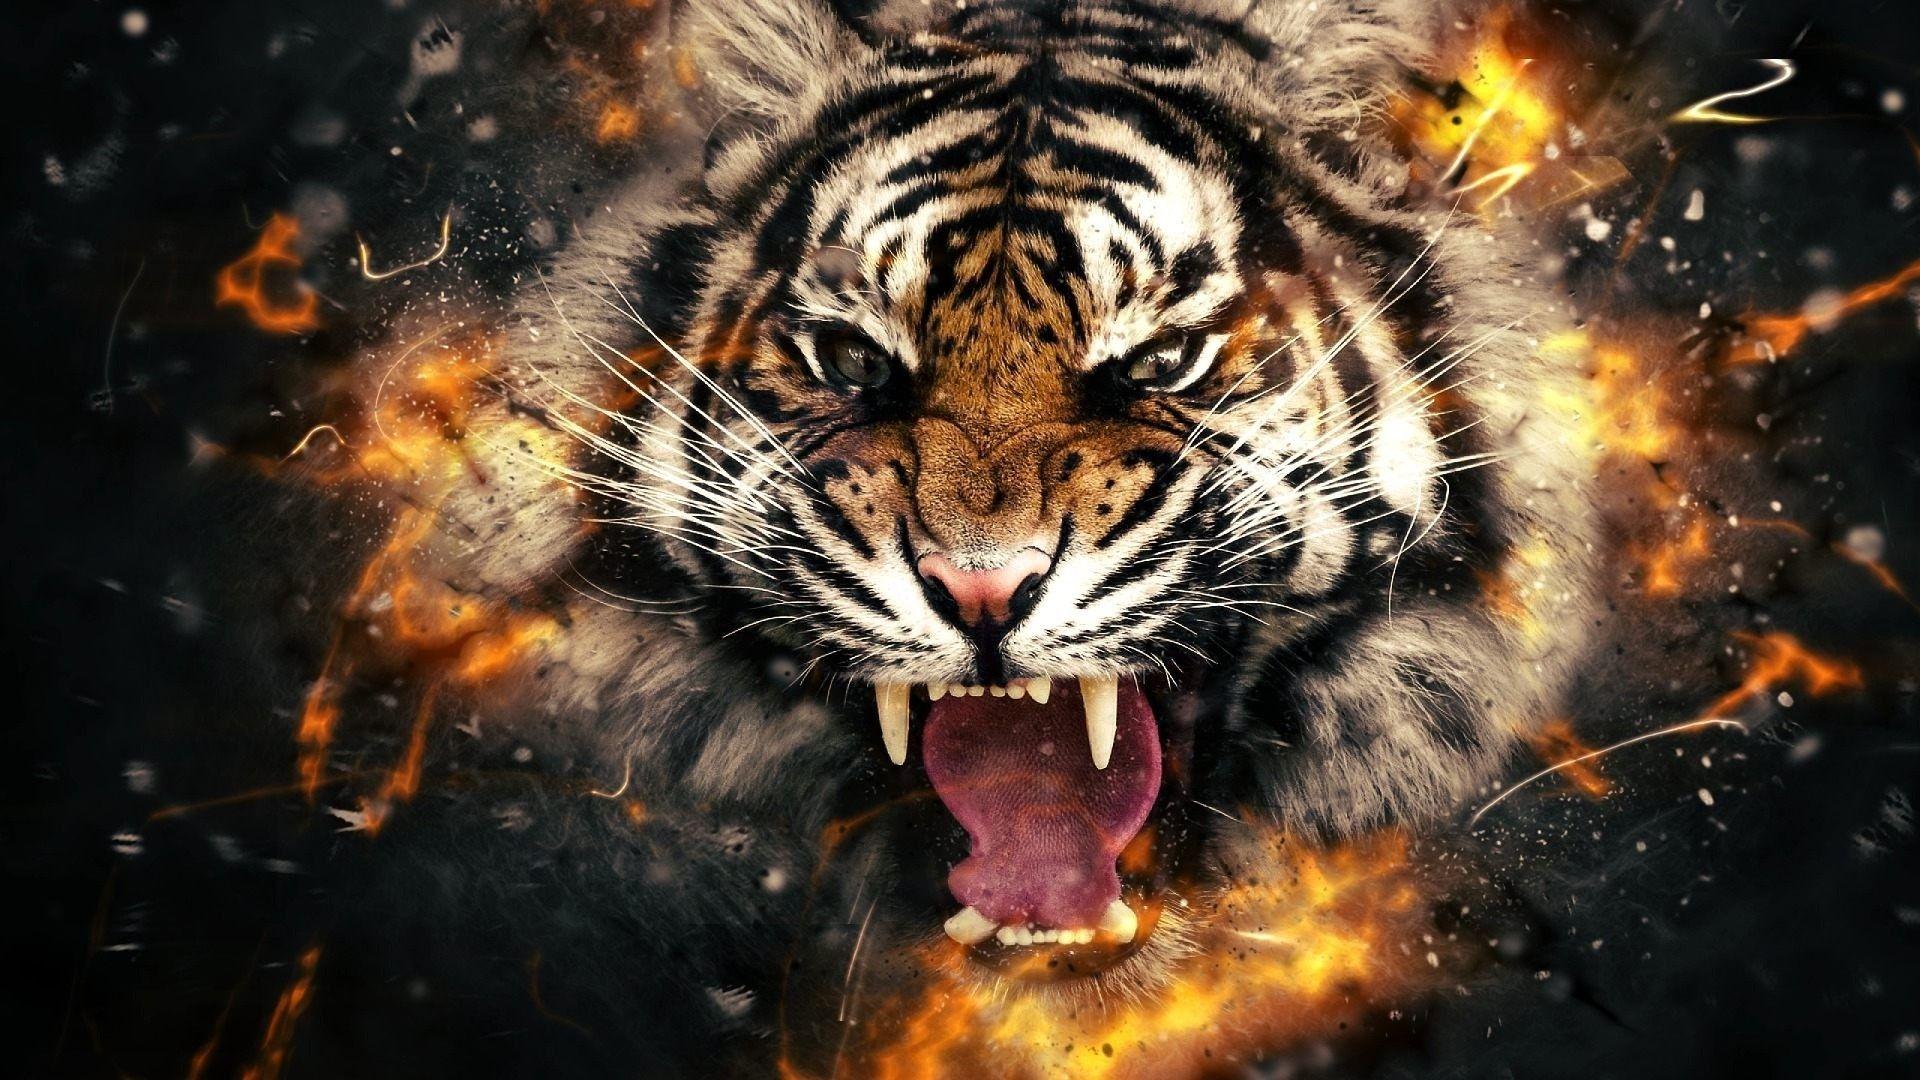 Epic Tiger Wallpapers - Top Những Hình Ảnh Đẹp